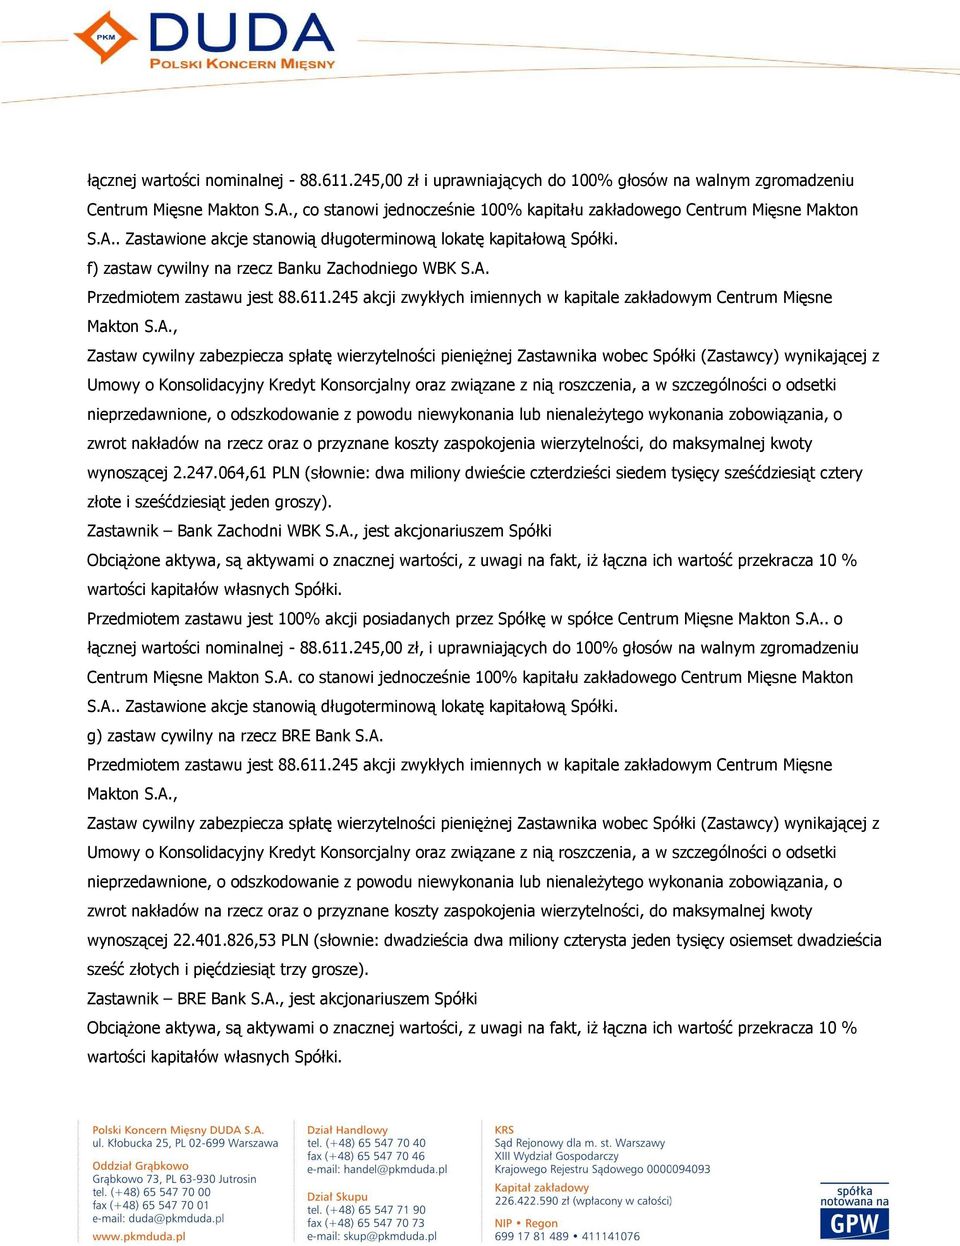 611.245 akcji zwykłych imiennych w kapitale zakładowym Centrum Mięsne Makton S.A.